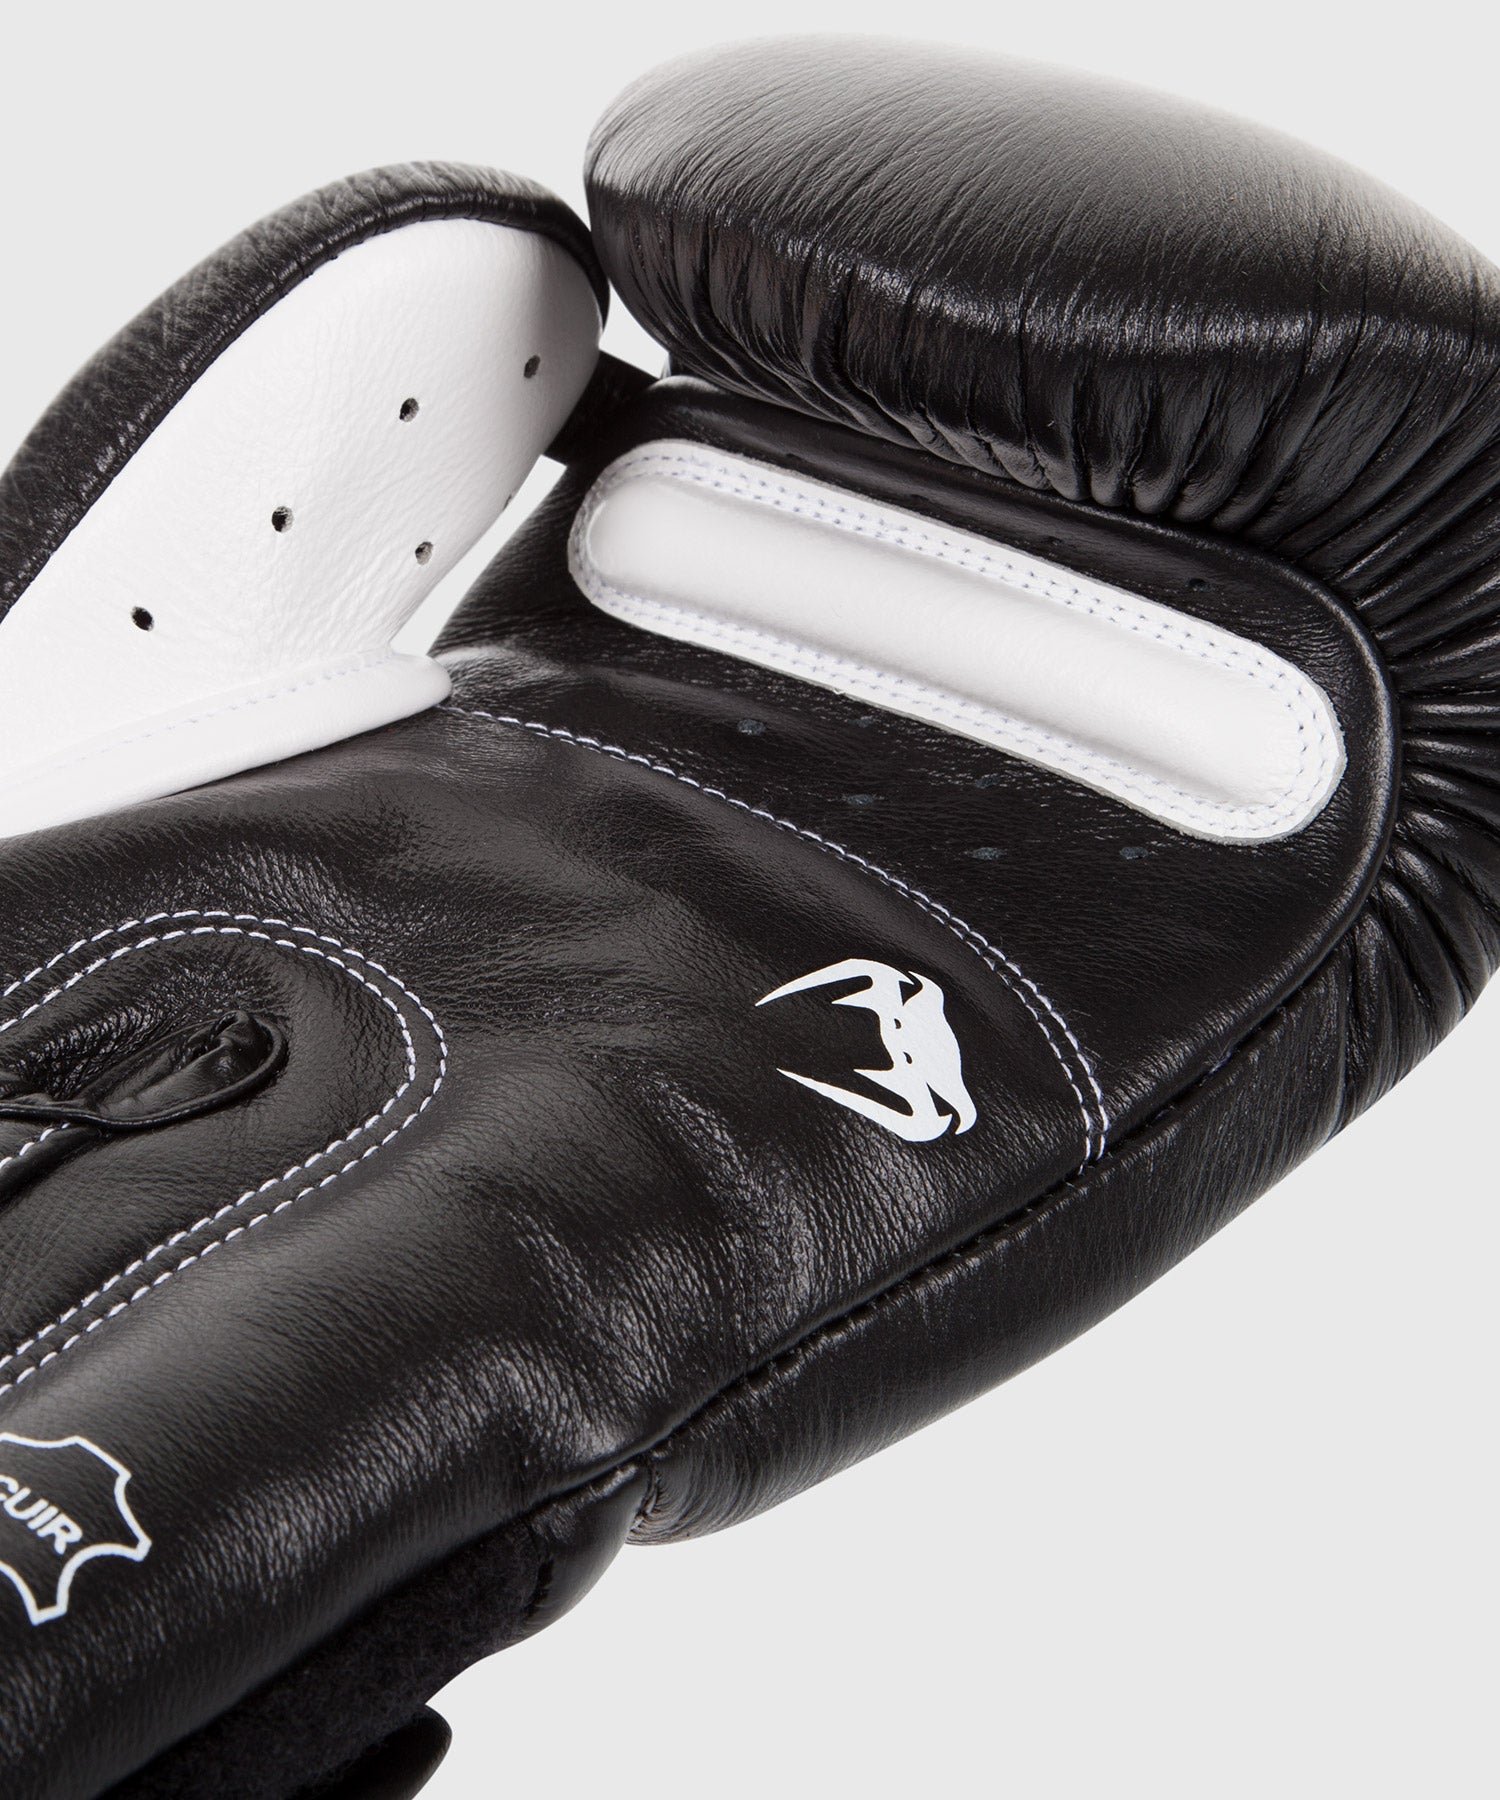 Gants de boxe Venum Giant 3.0 noir / gris